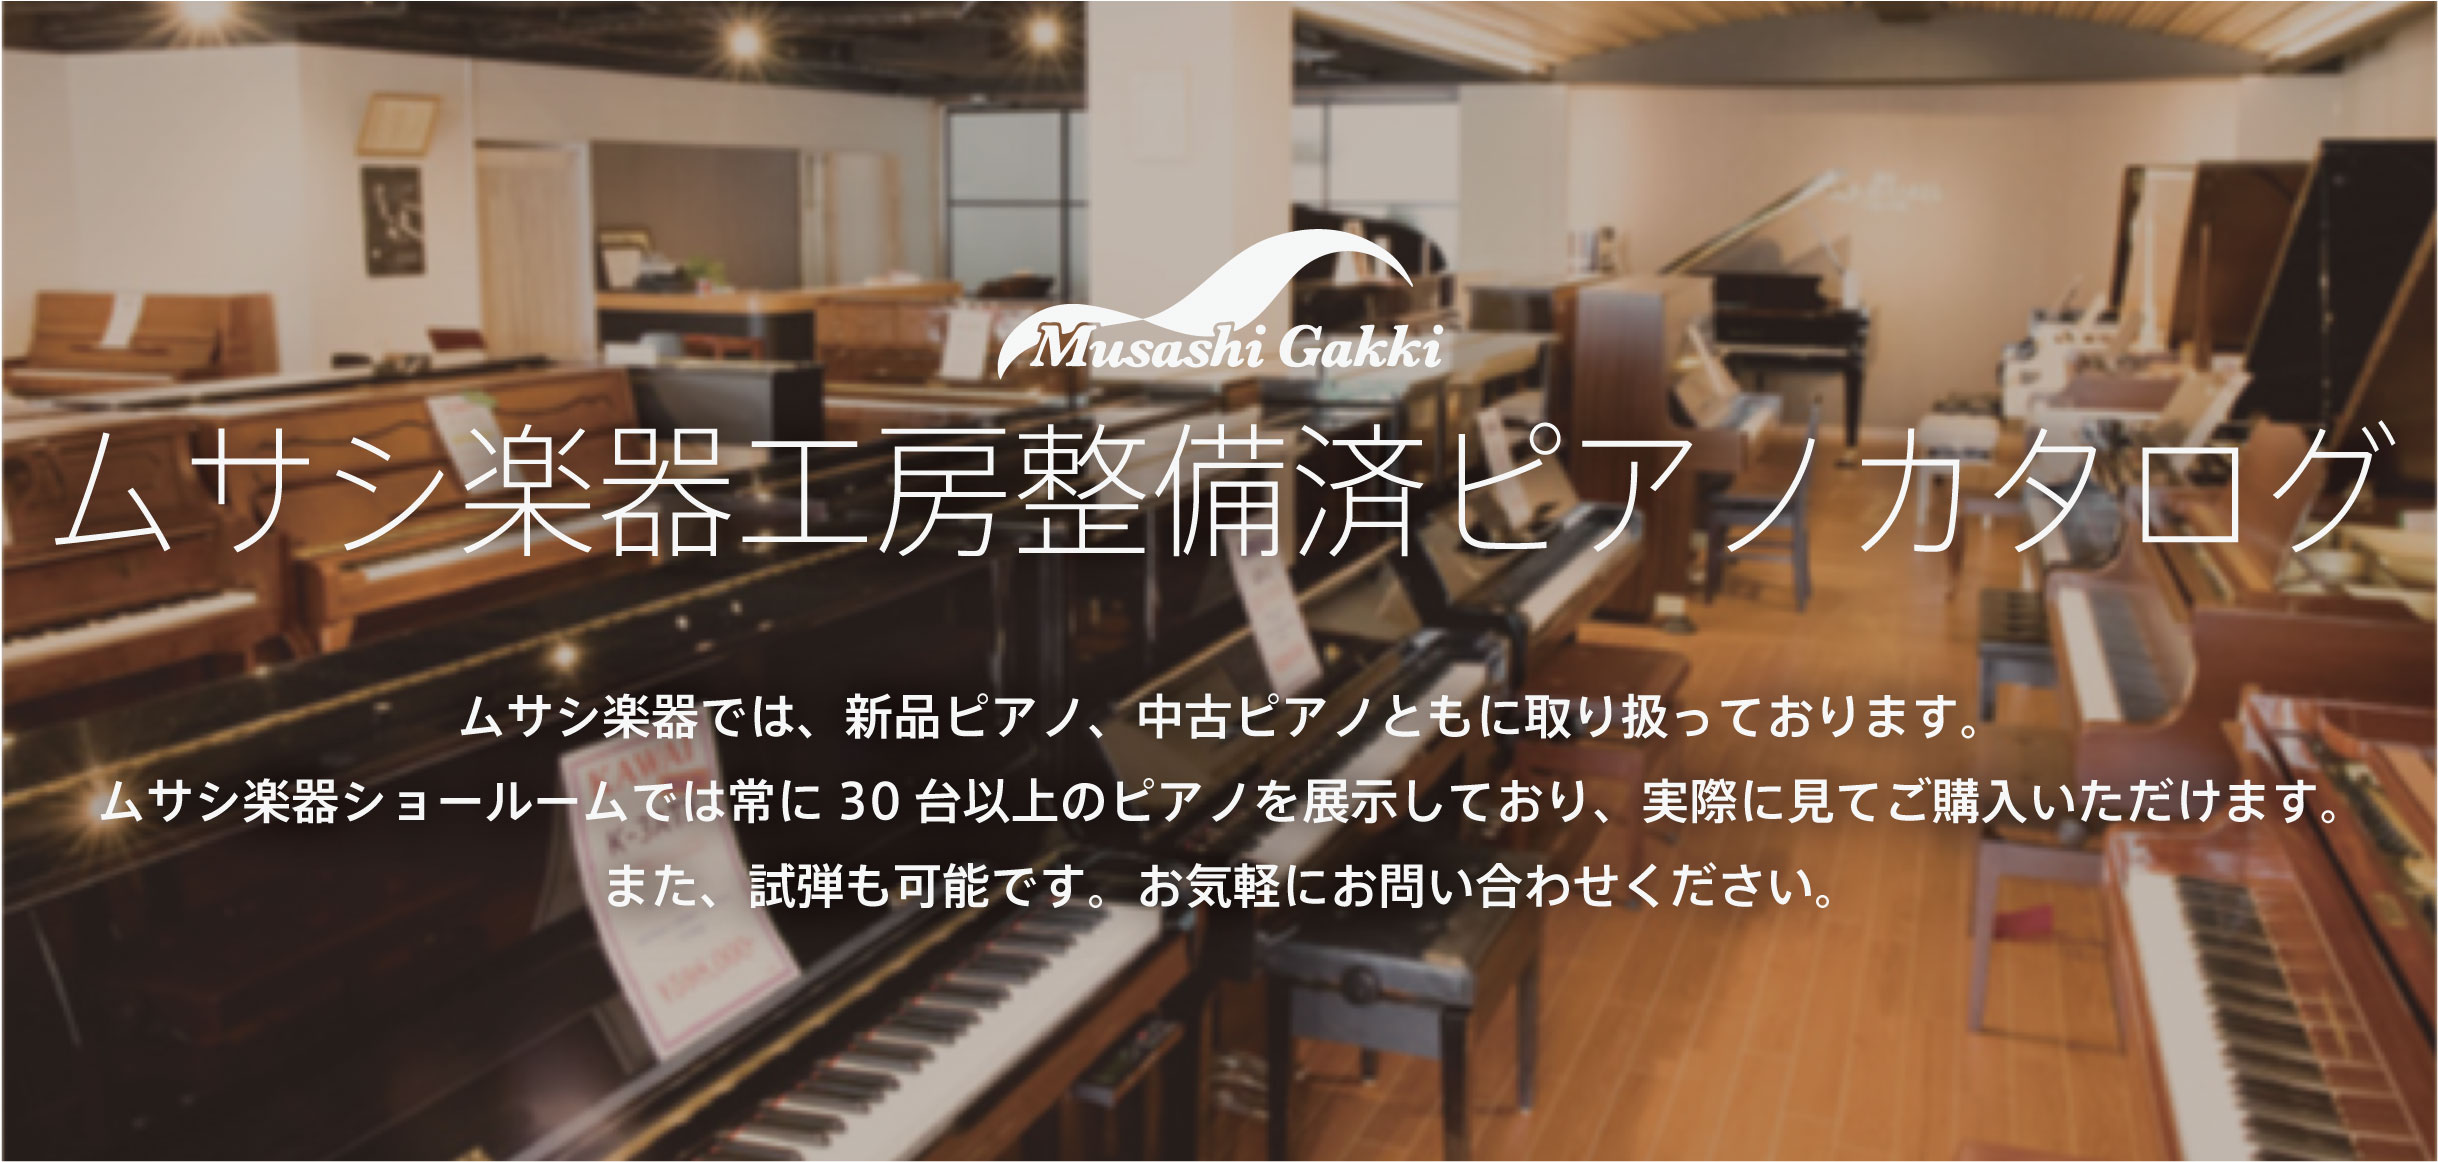 【中古ピアノ】ムサシ楽器工房リニューアルピアノカタログ